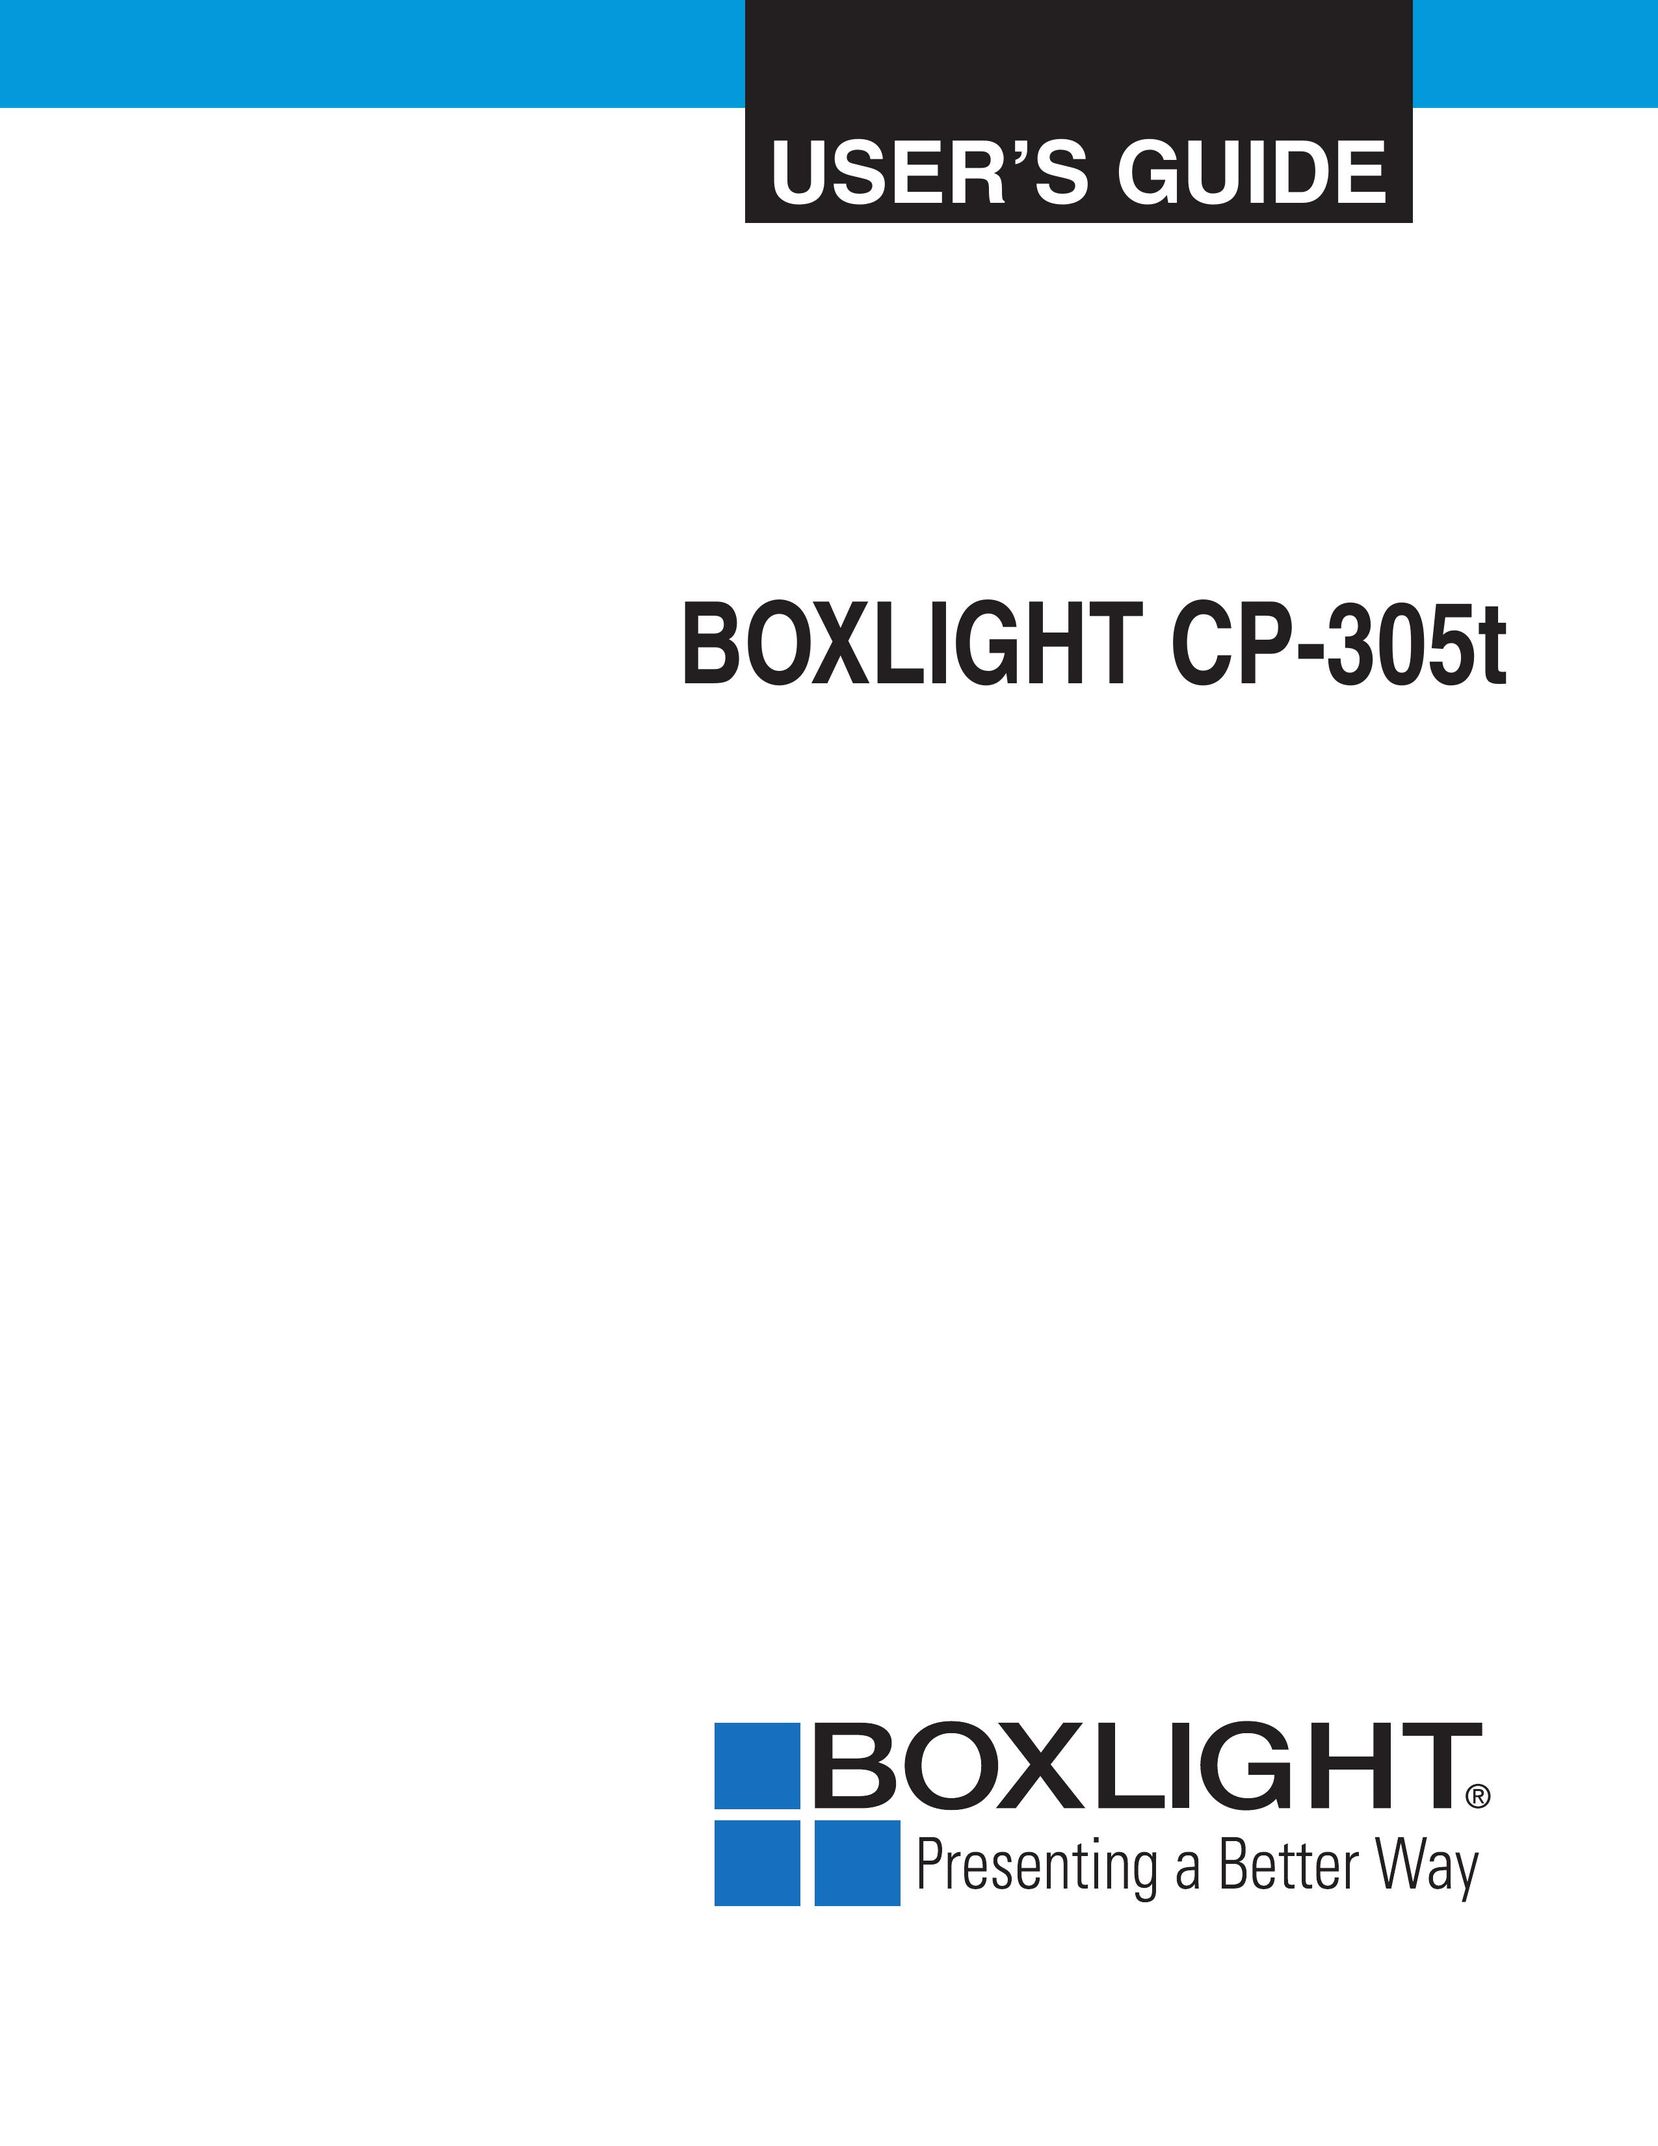 BOXLIGHT cp-305t Projector User Manual